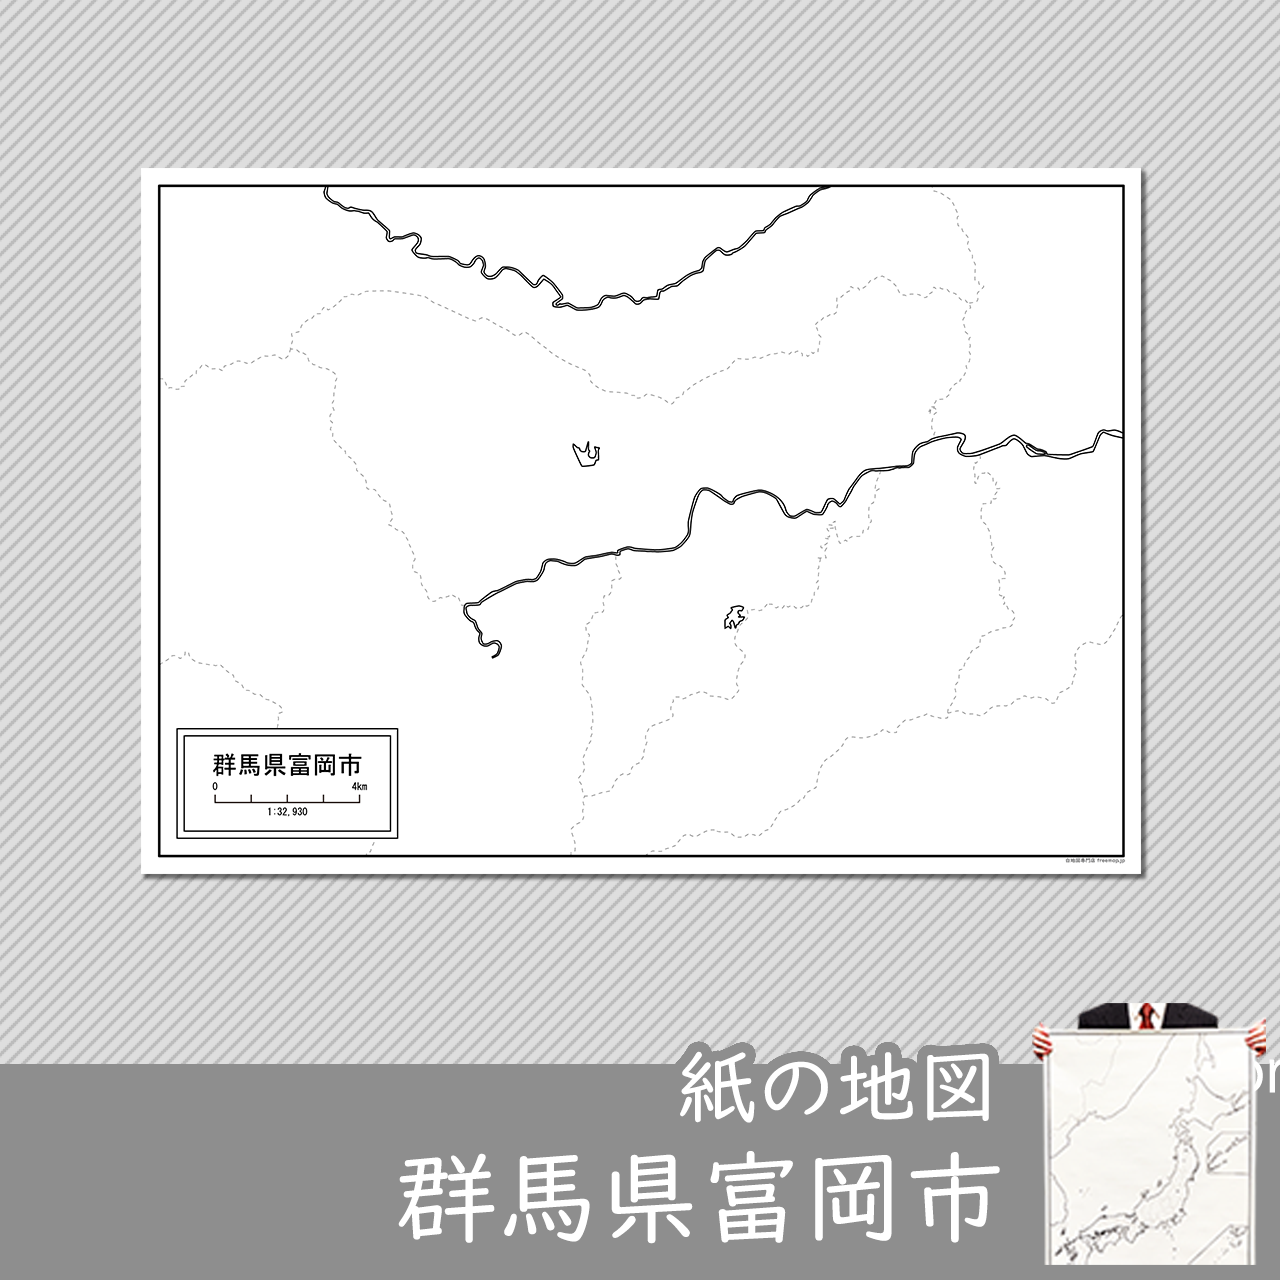 富岡市の紙の白地図のサムネイル